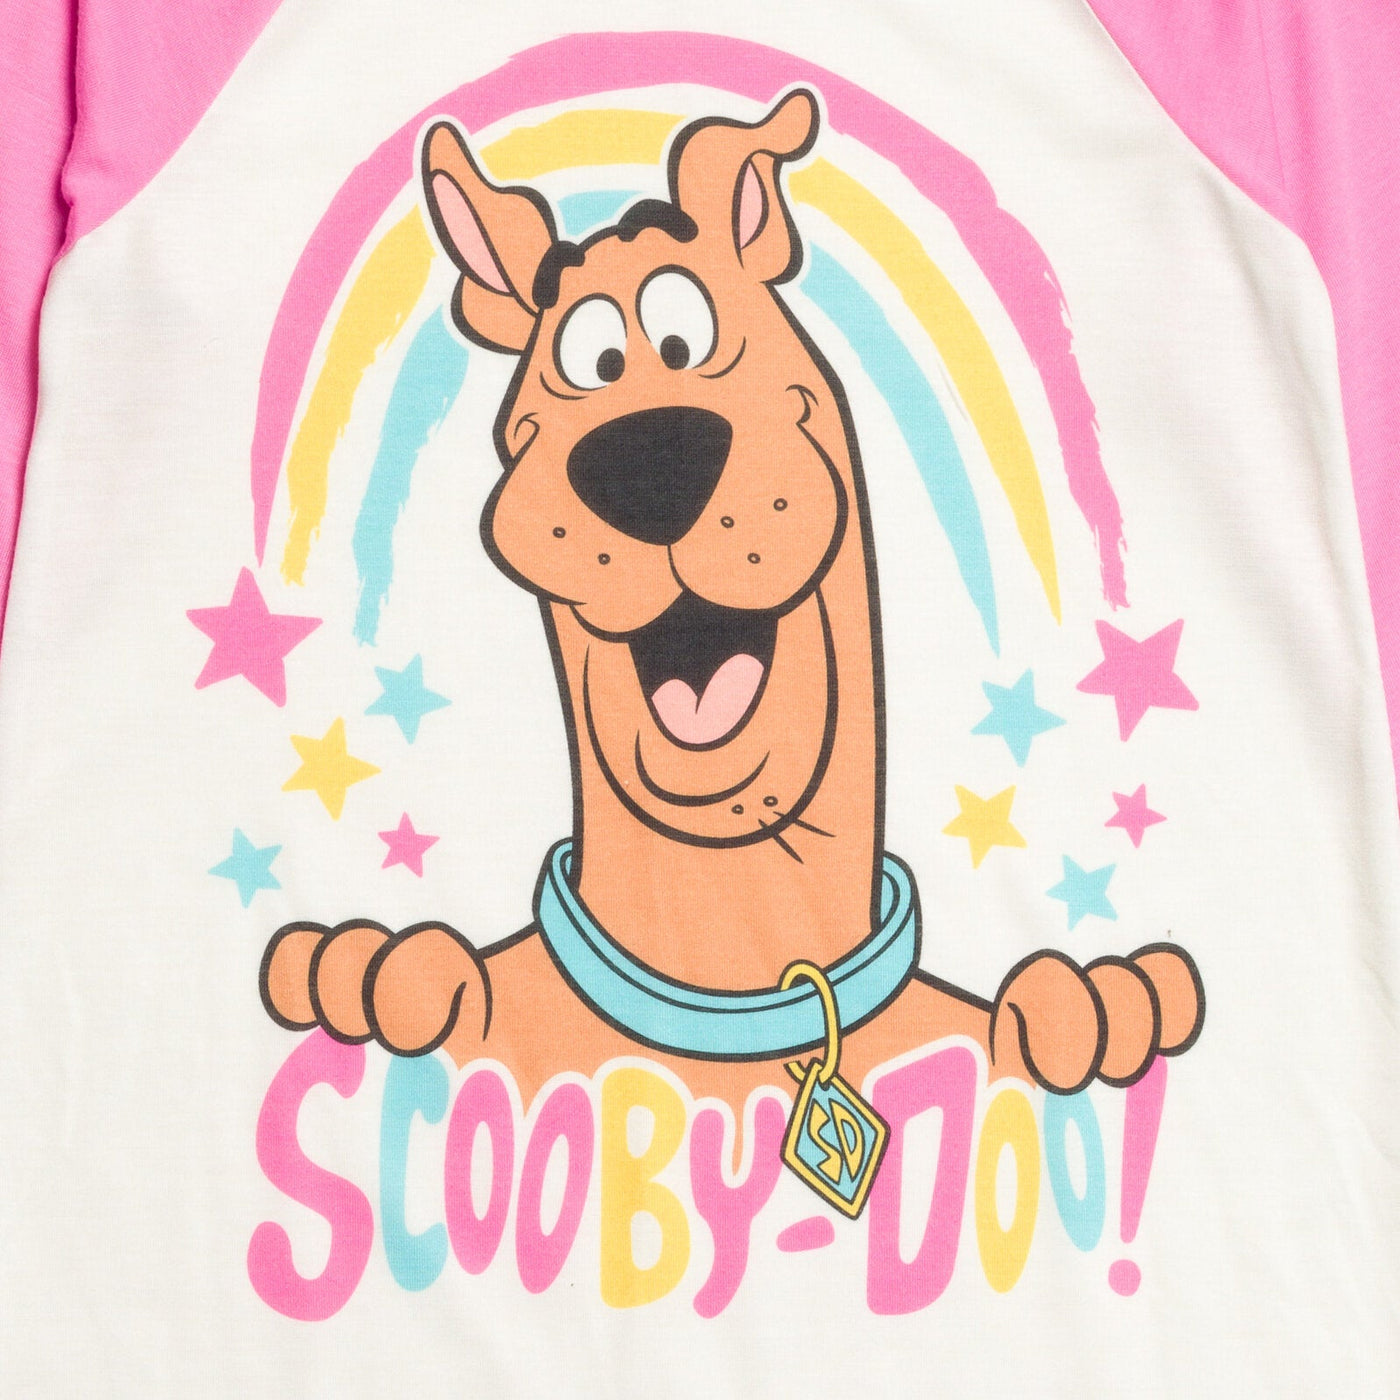 Warner Bros. Scooby Doo Nightgown Pajamas - imagikids